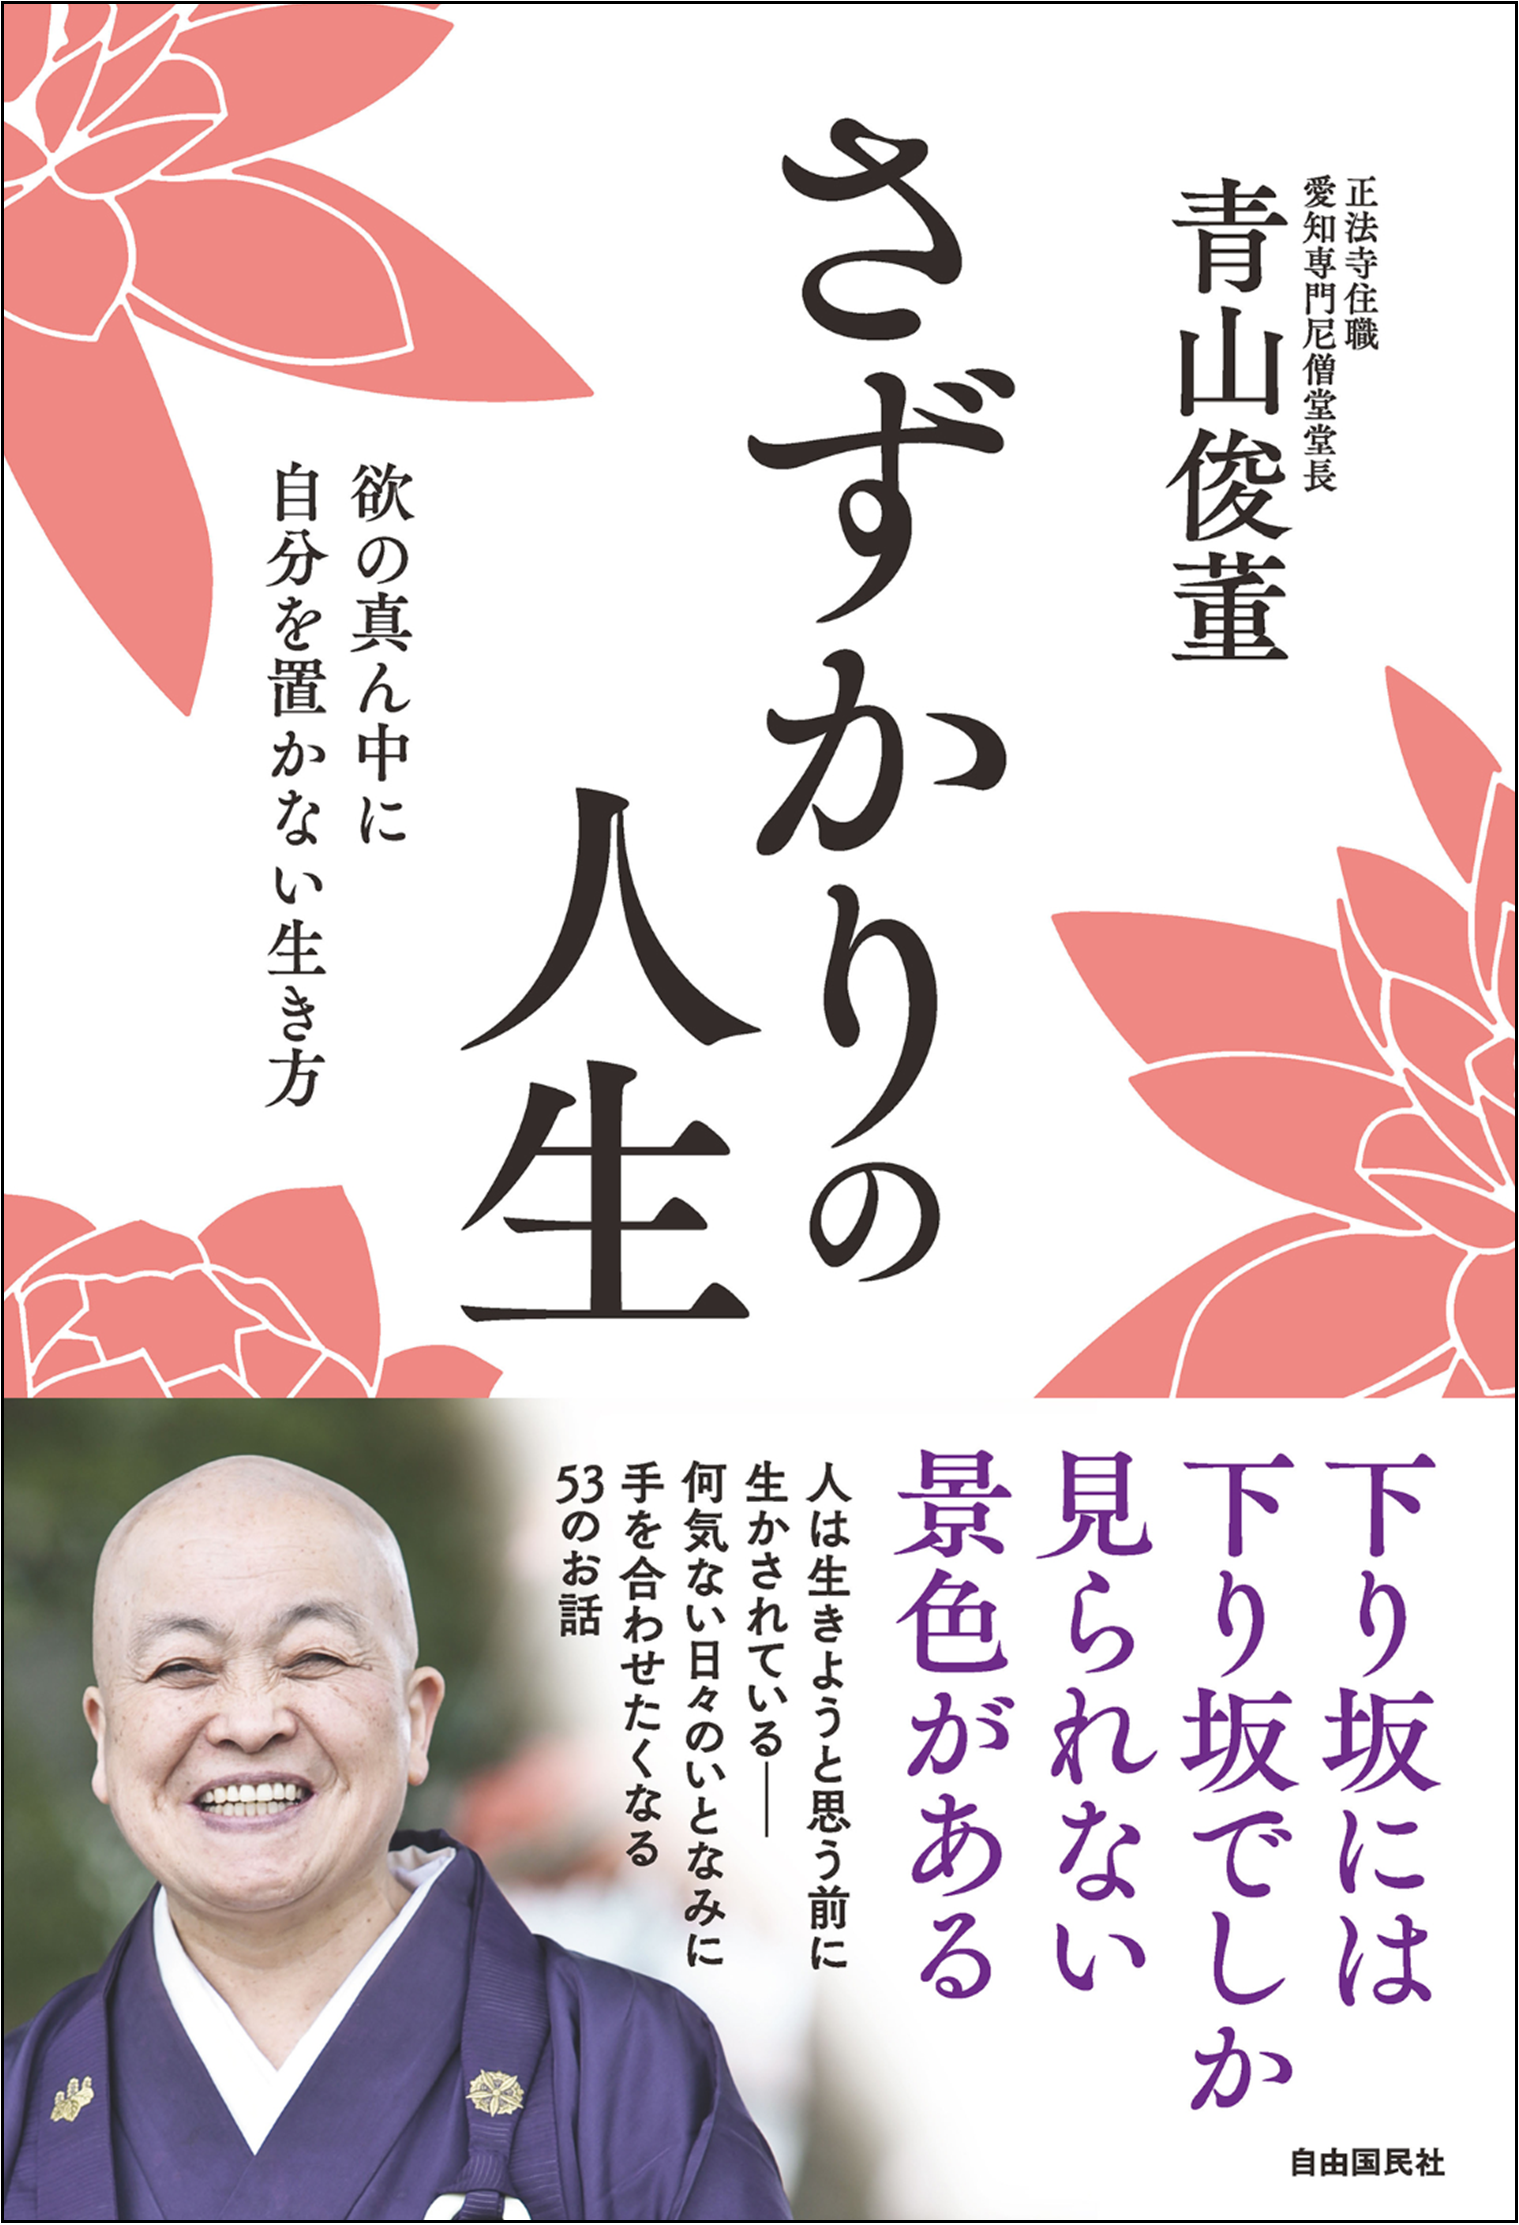 日本を代表する女性僧侶が説く 禅の教えで心穏やかに 株式会社自由国民社のプレスリリース